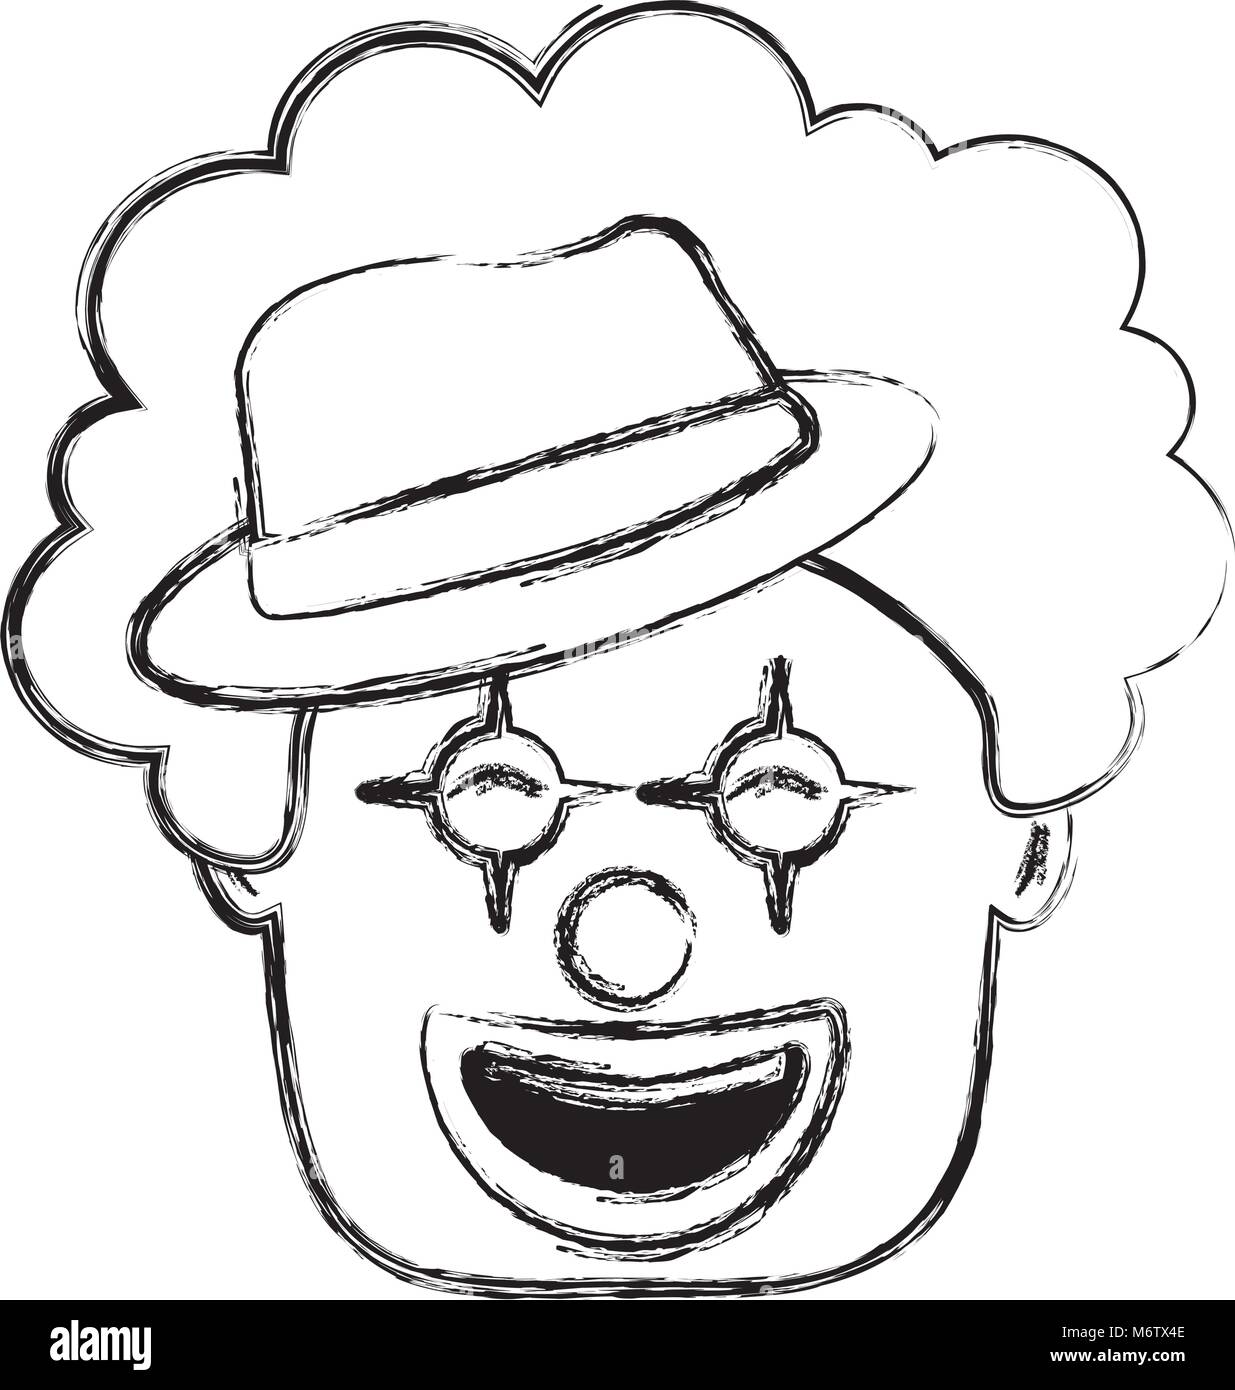 Smiling face clown avec chapeau et cheveux d'illustration vectorielle de  l'image sketch rigolo Image Vectorielle Stock - Alamy